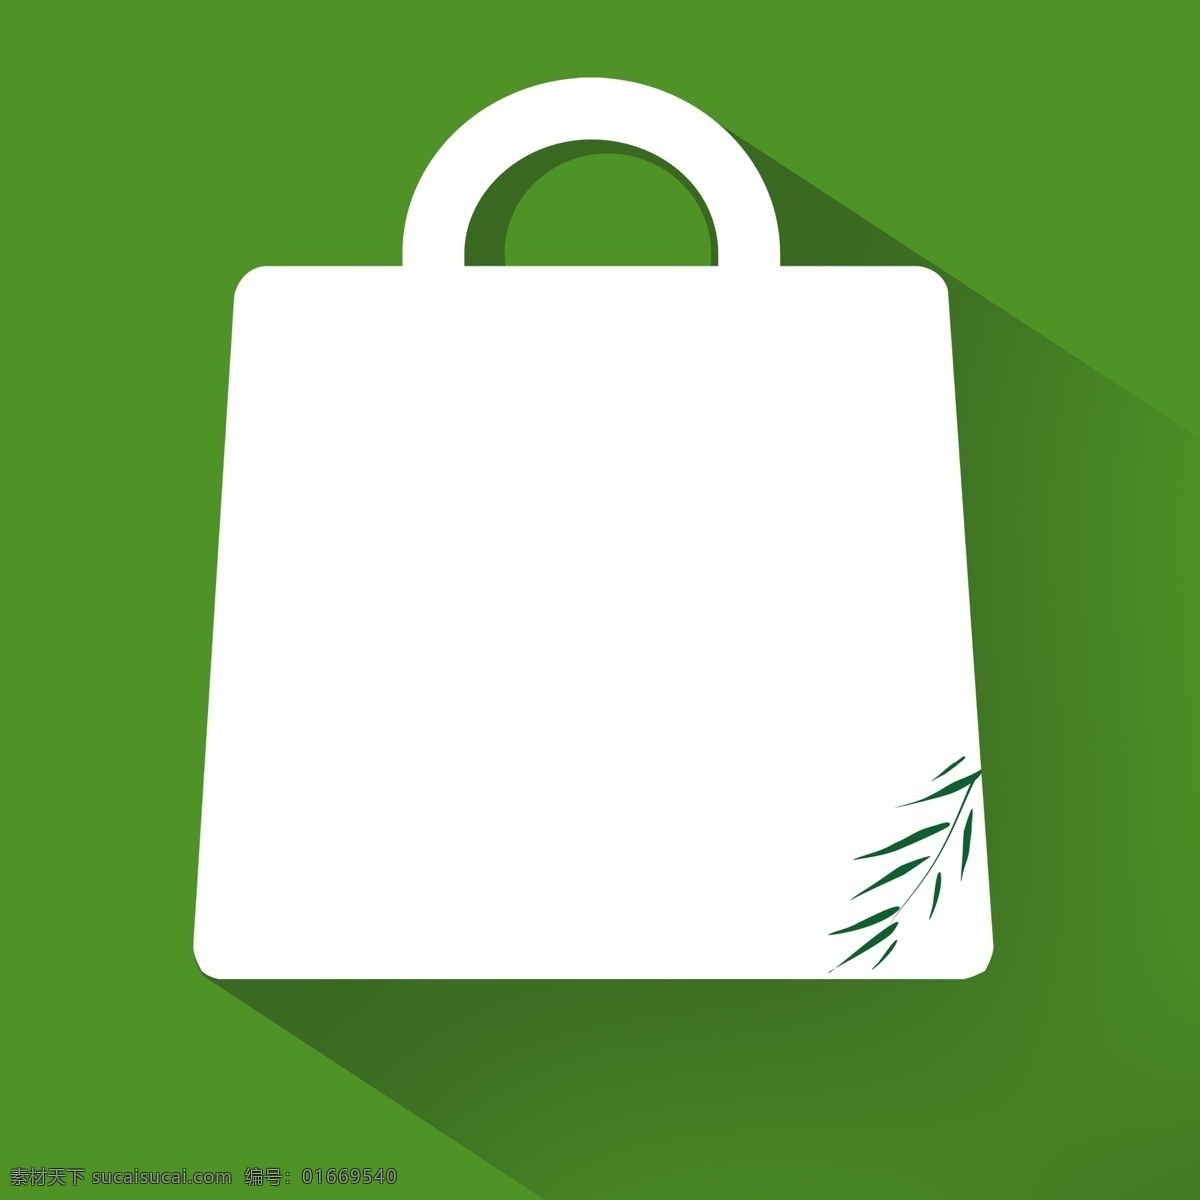 绿色 促销 背景 购物袋 长投影背景 绿色背景 长投影 psd分层 海报背景 分层 背景素材